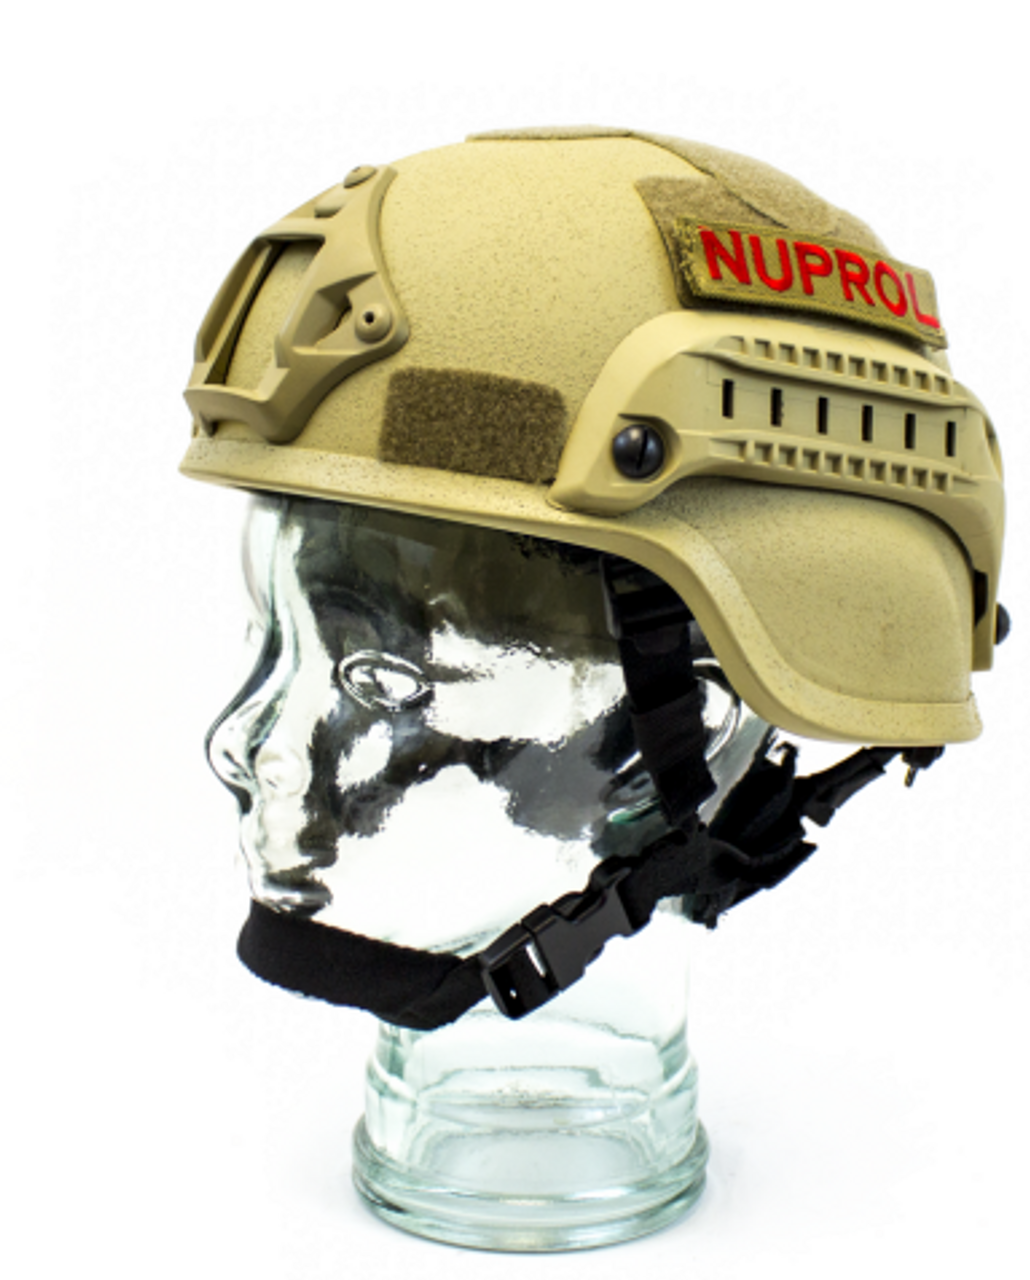 Nuprol Mich 2000 Railed Helmet Tan